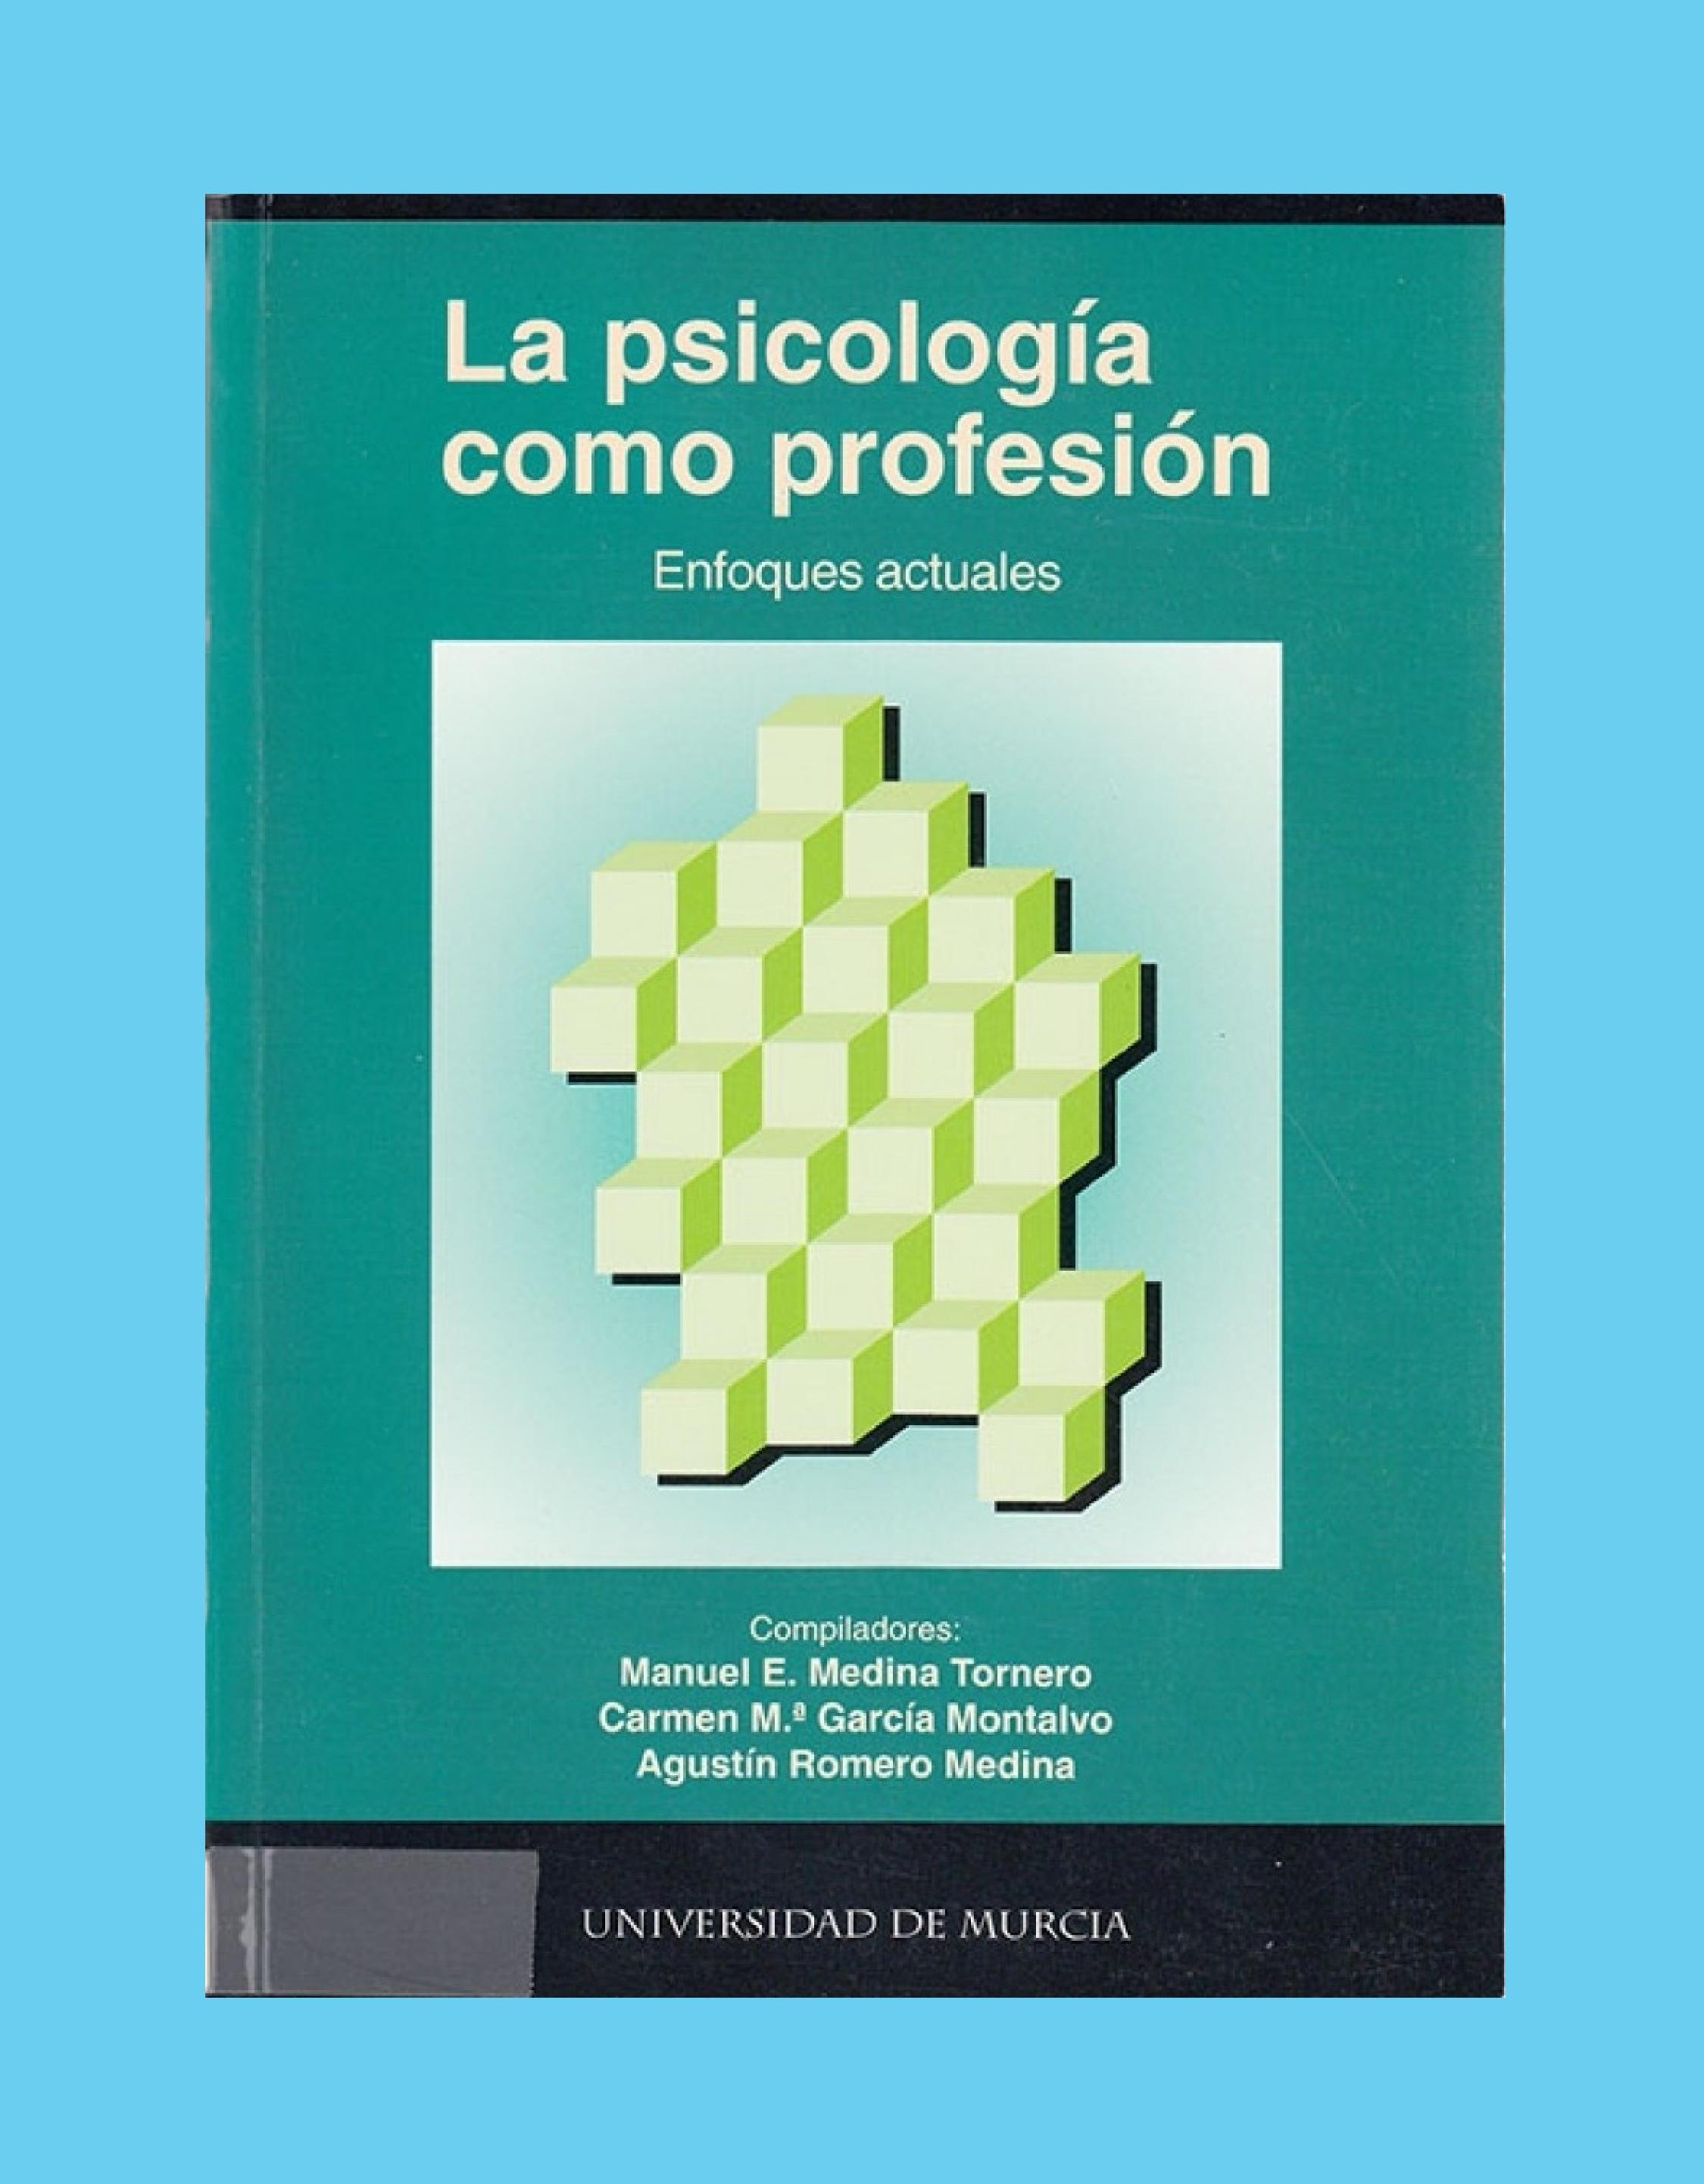 La psicología como profesión enfoques actuales: selección y adaptación de ponencias y comunicados del II Congreso de Psicología Profesional, Murcia, Mayo 1995